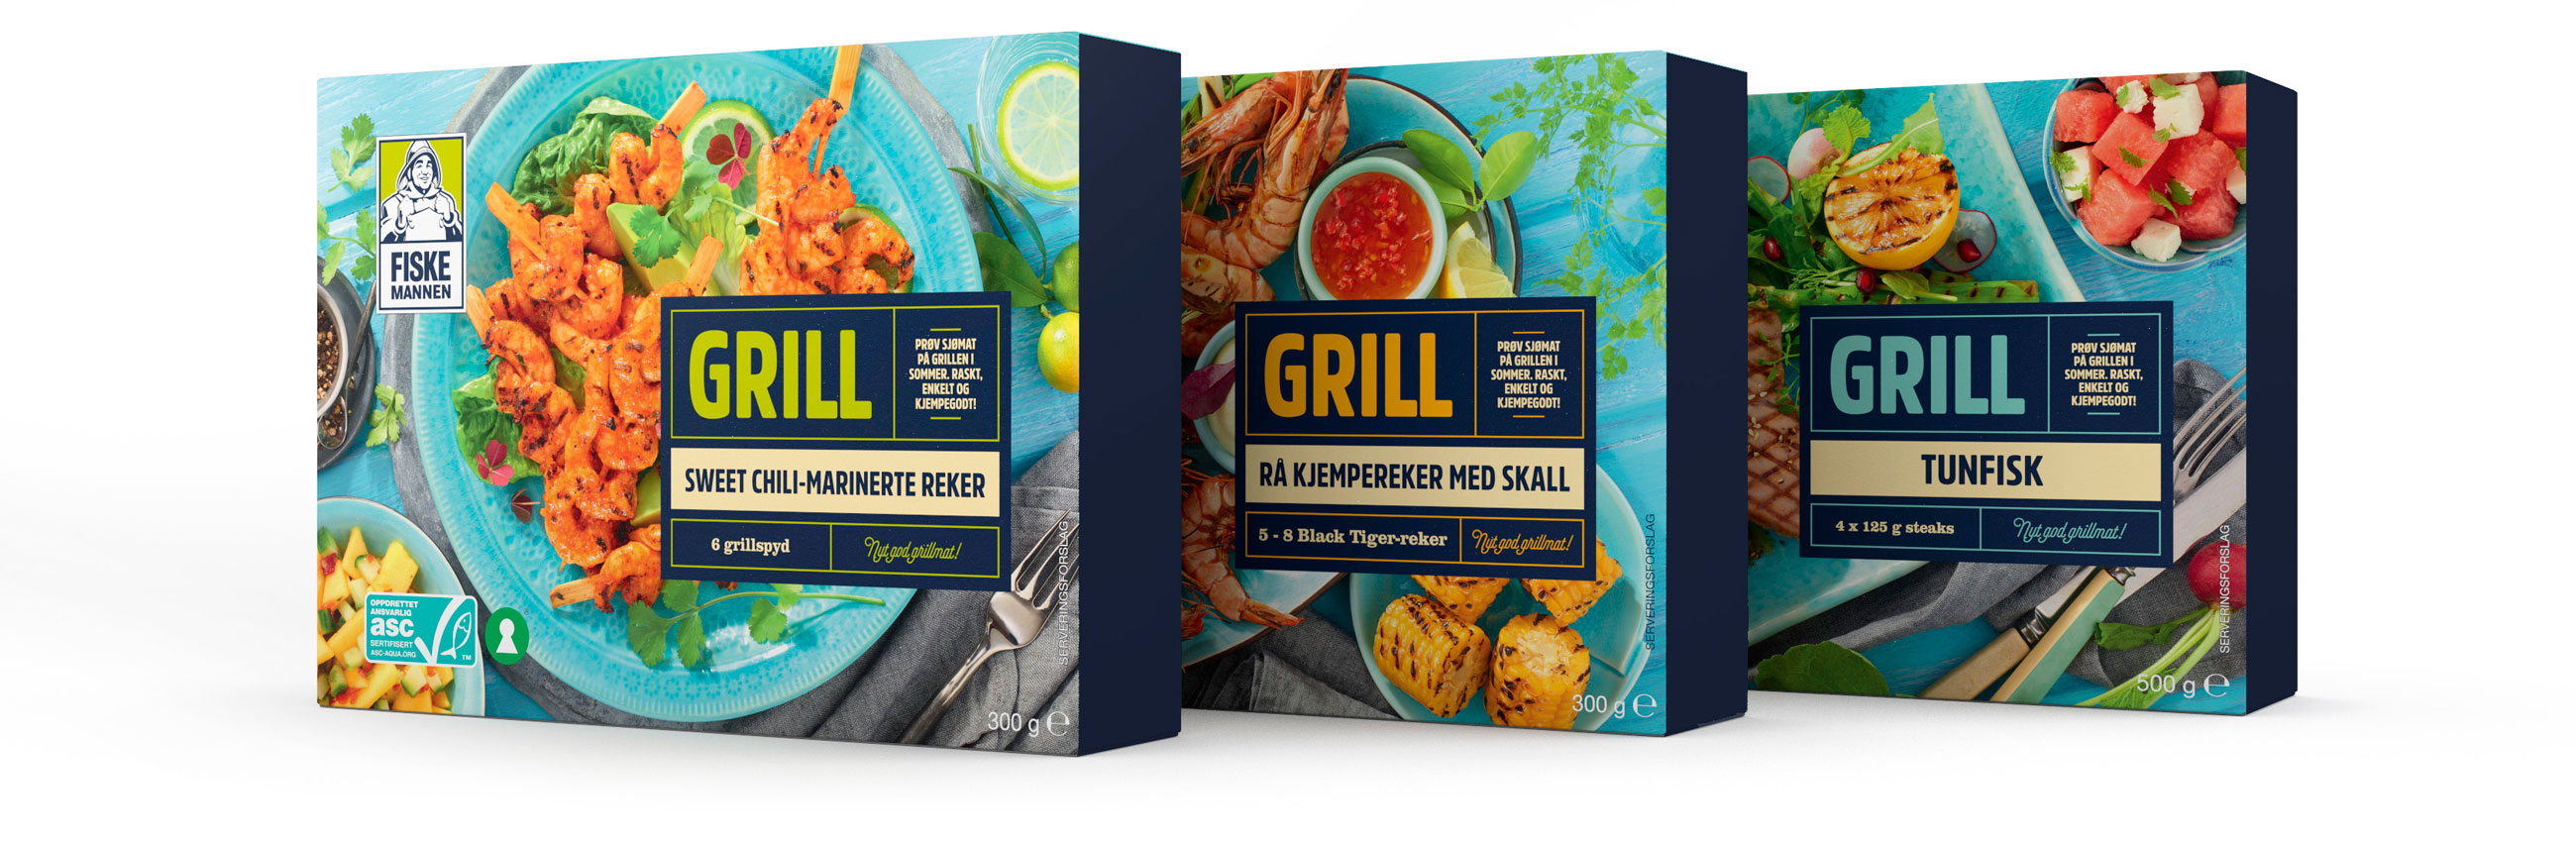 Fiskemannen Grill Sweet chili marinerte reker, rå kjempereker med skall og tunfisk. Emballasje packaging design.